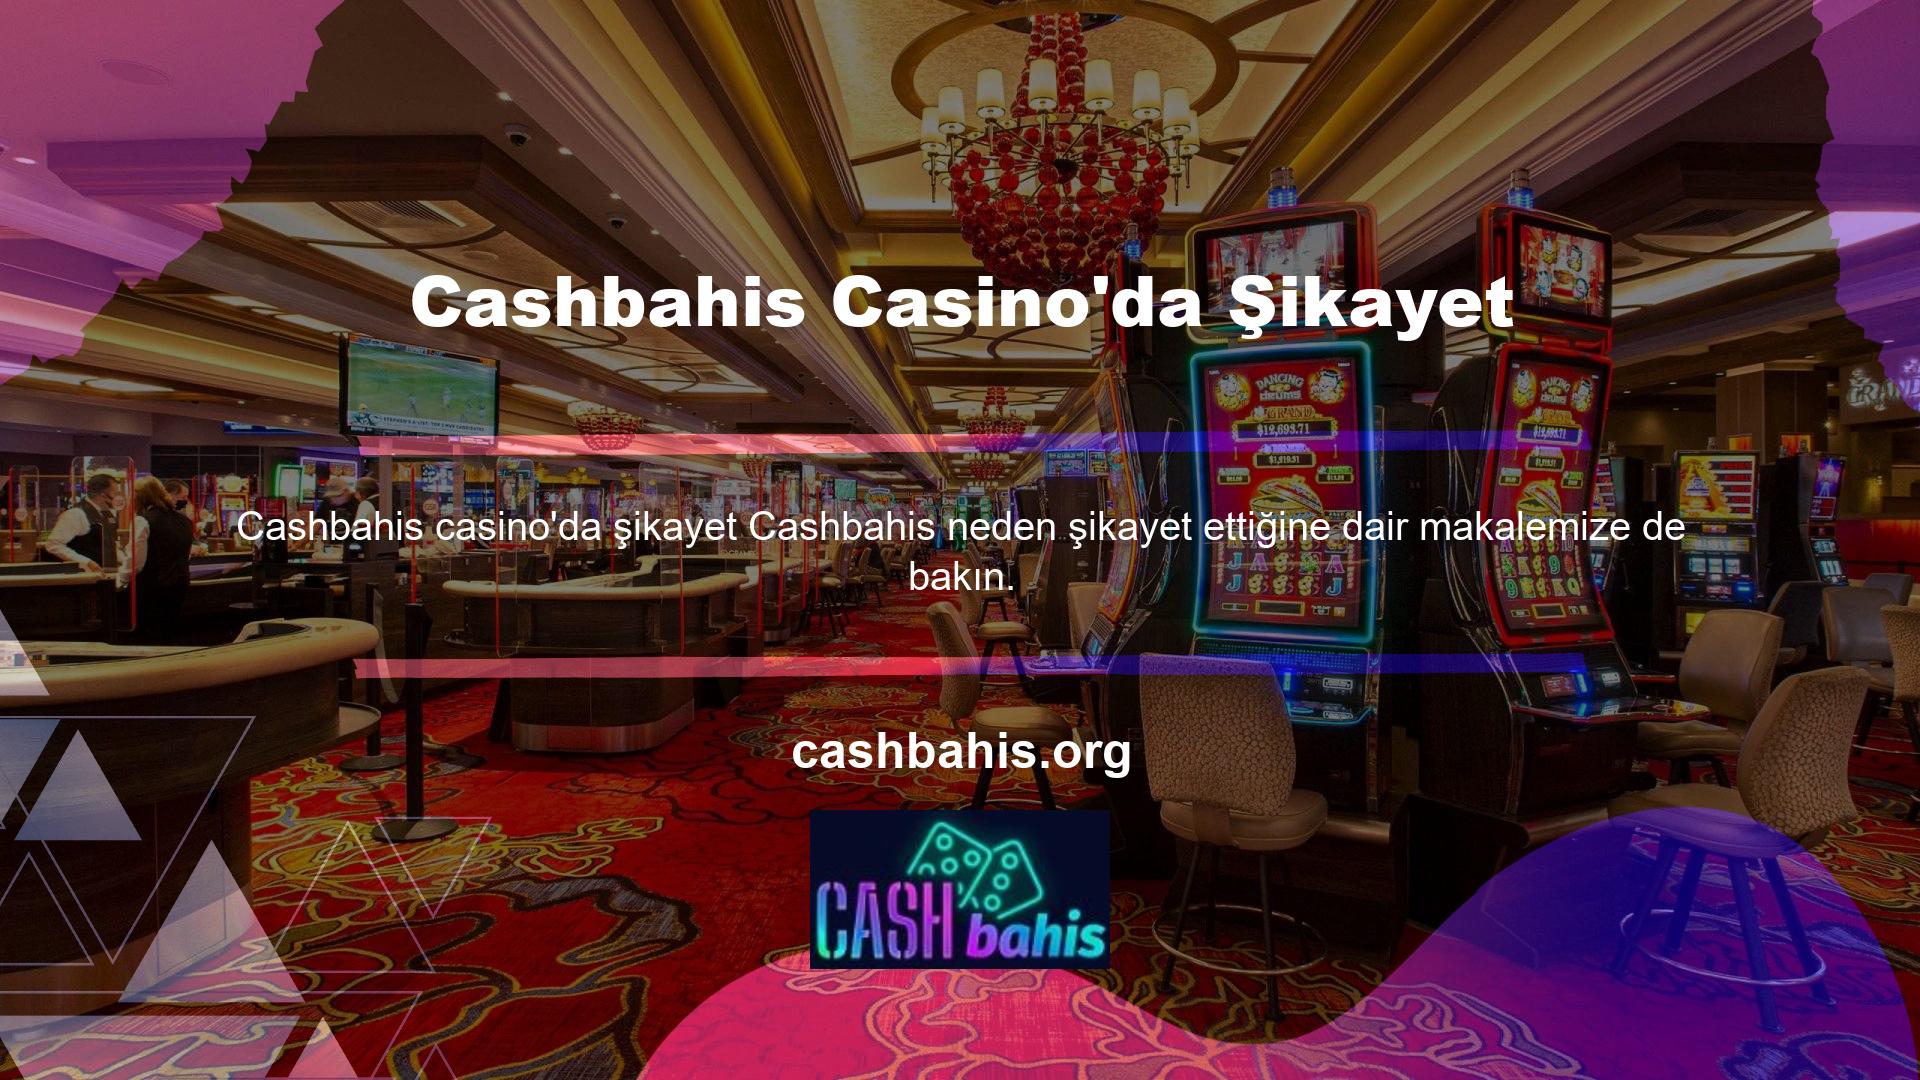 Cashbahis oyun siteleri sorun yaşayan oyunculardan gelen şikayetler nedeniyle sürekli olarak çalışır durumdadır